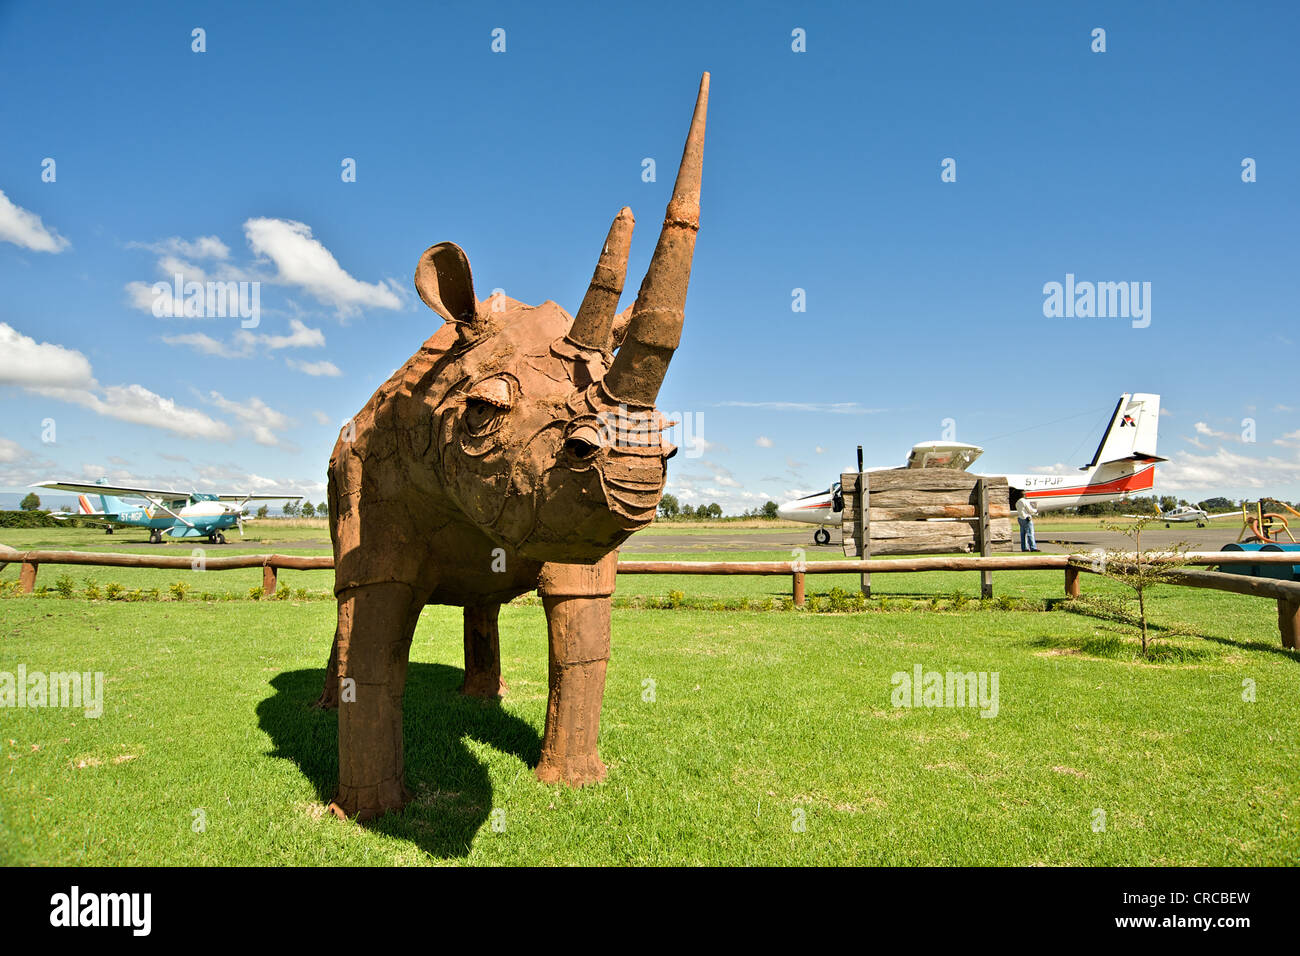 Estatua del rinoceronte en Laikipia aeródromo. Kenia, África Oriental. Foto de stock